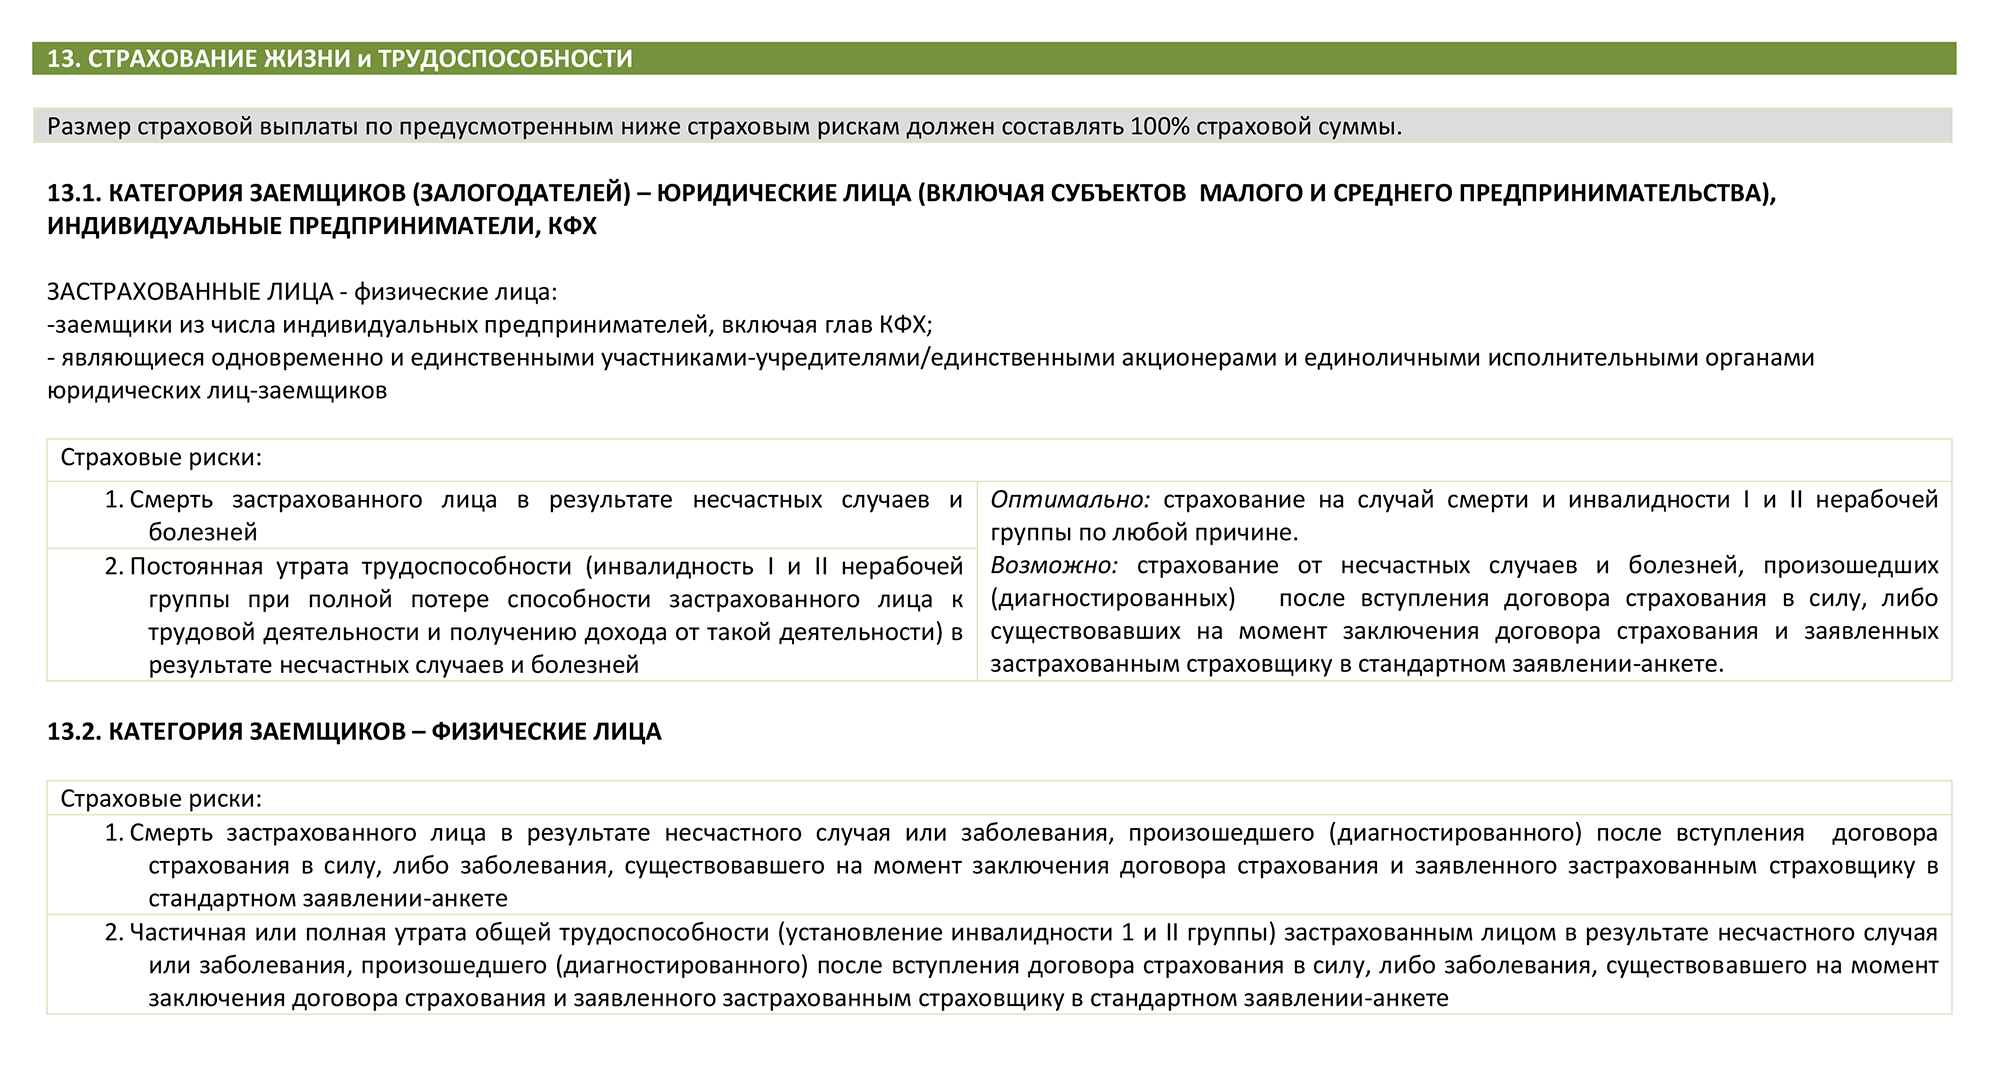 На сайте «Россельхозбанка» указаны всего два минимальных риска. Чтобы сохранить пониженную ставку, необязательно страховаться от потери работы. Источник: rshb.ru